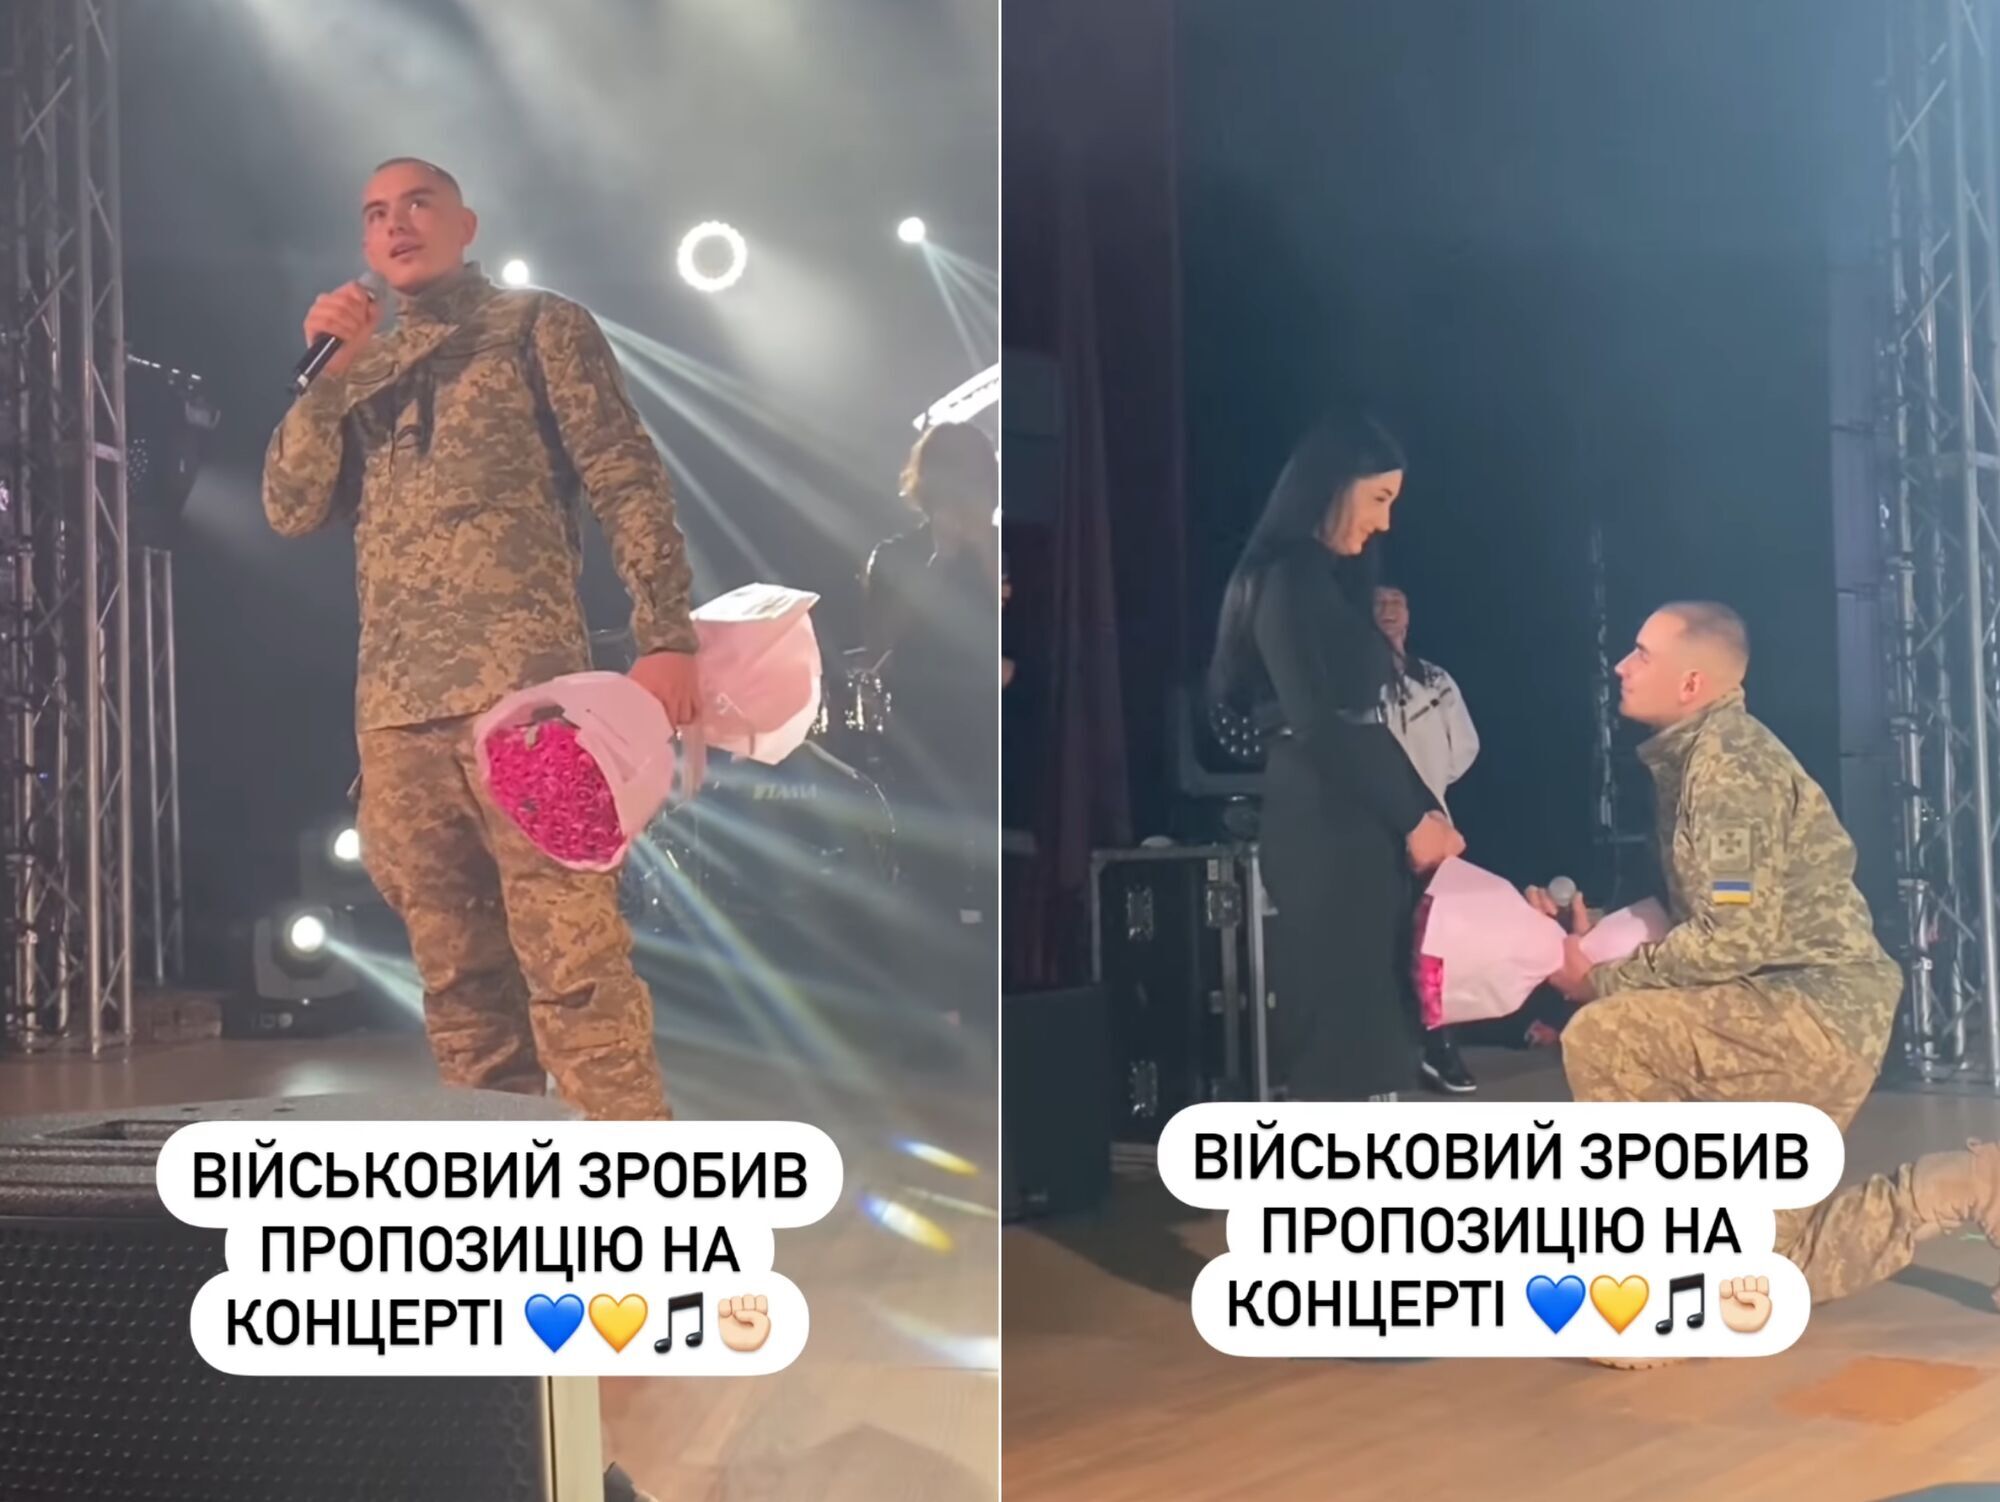 На концерті Артема Пивоварова військовий зробив пропозицію своїй коханій. Зворушливе відео